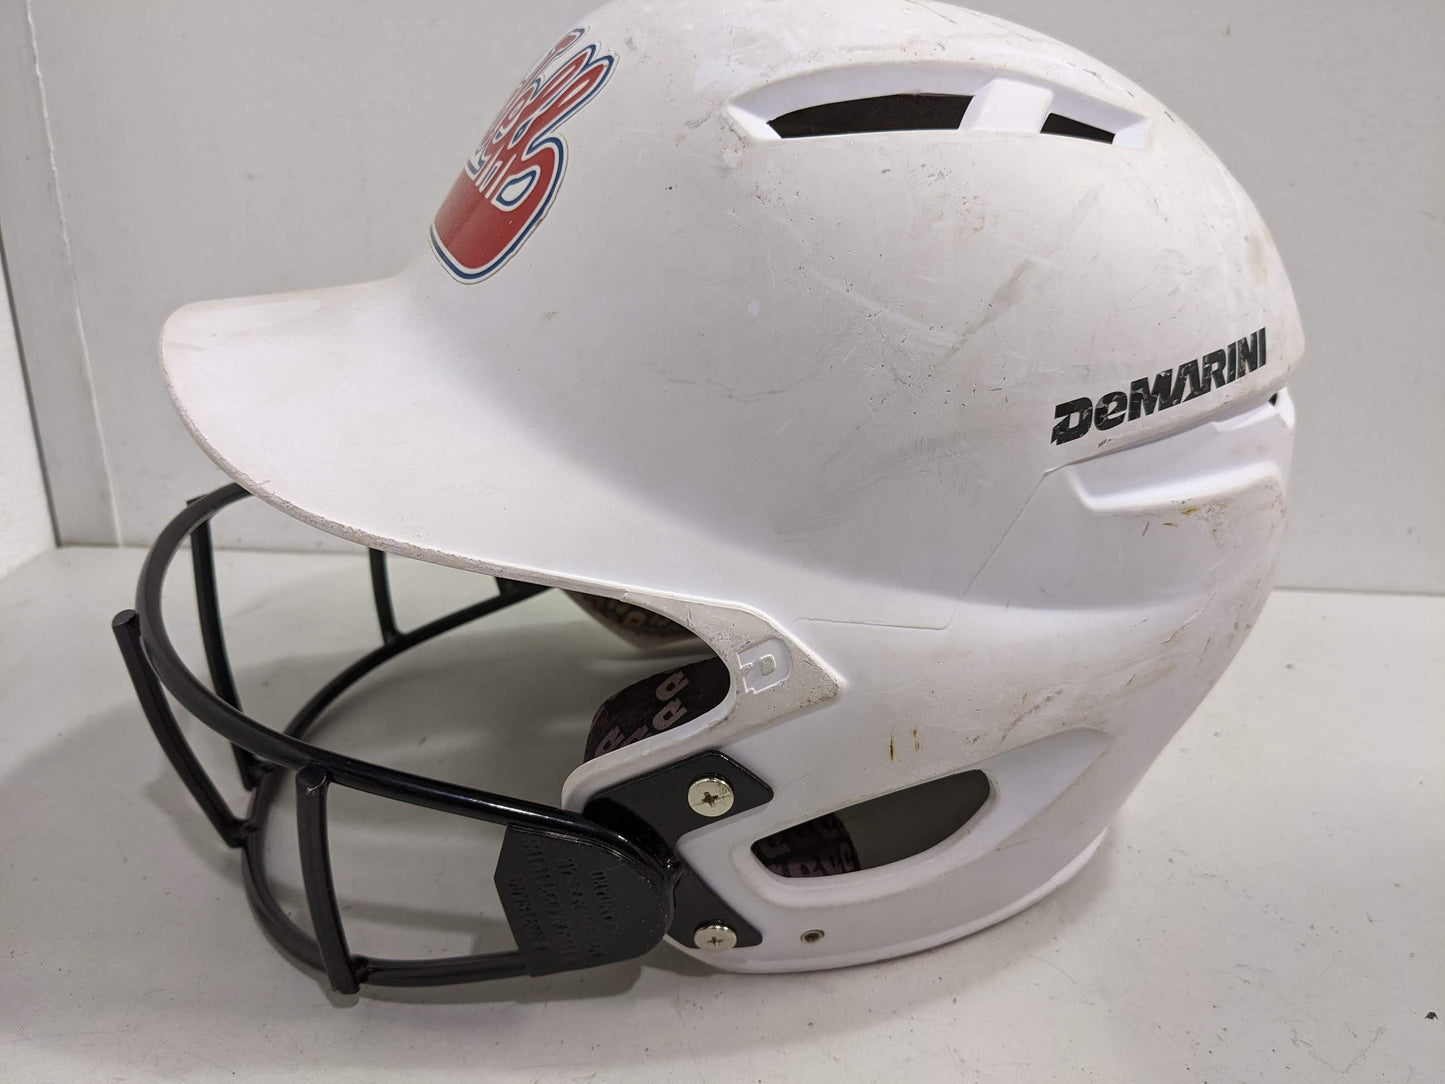 DeMarini West Jeff Baseball Batting Helmet Size Youth White Used Category Locally